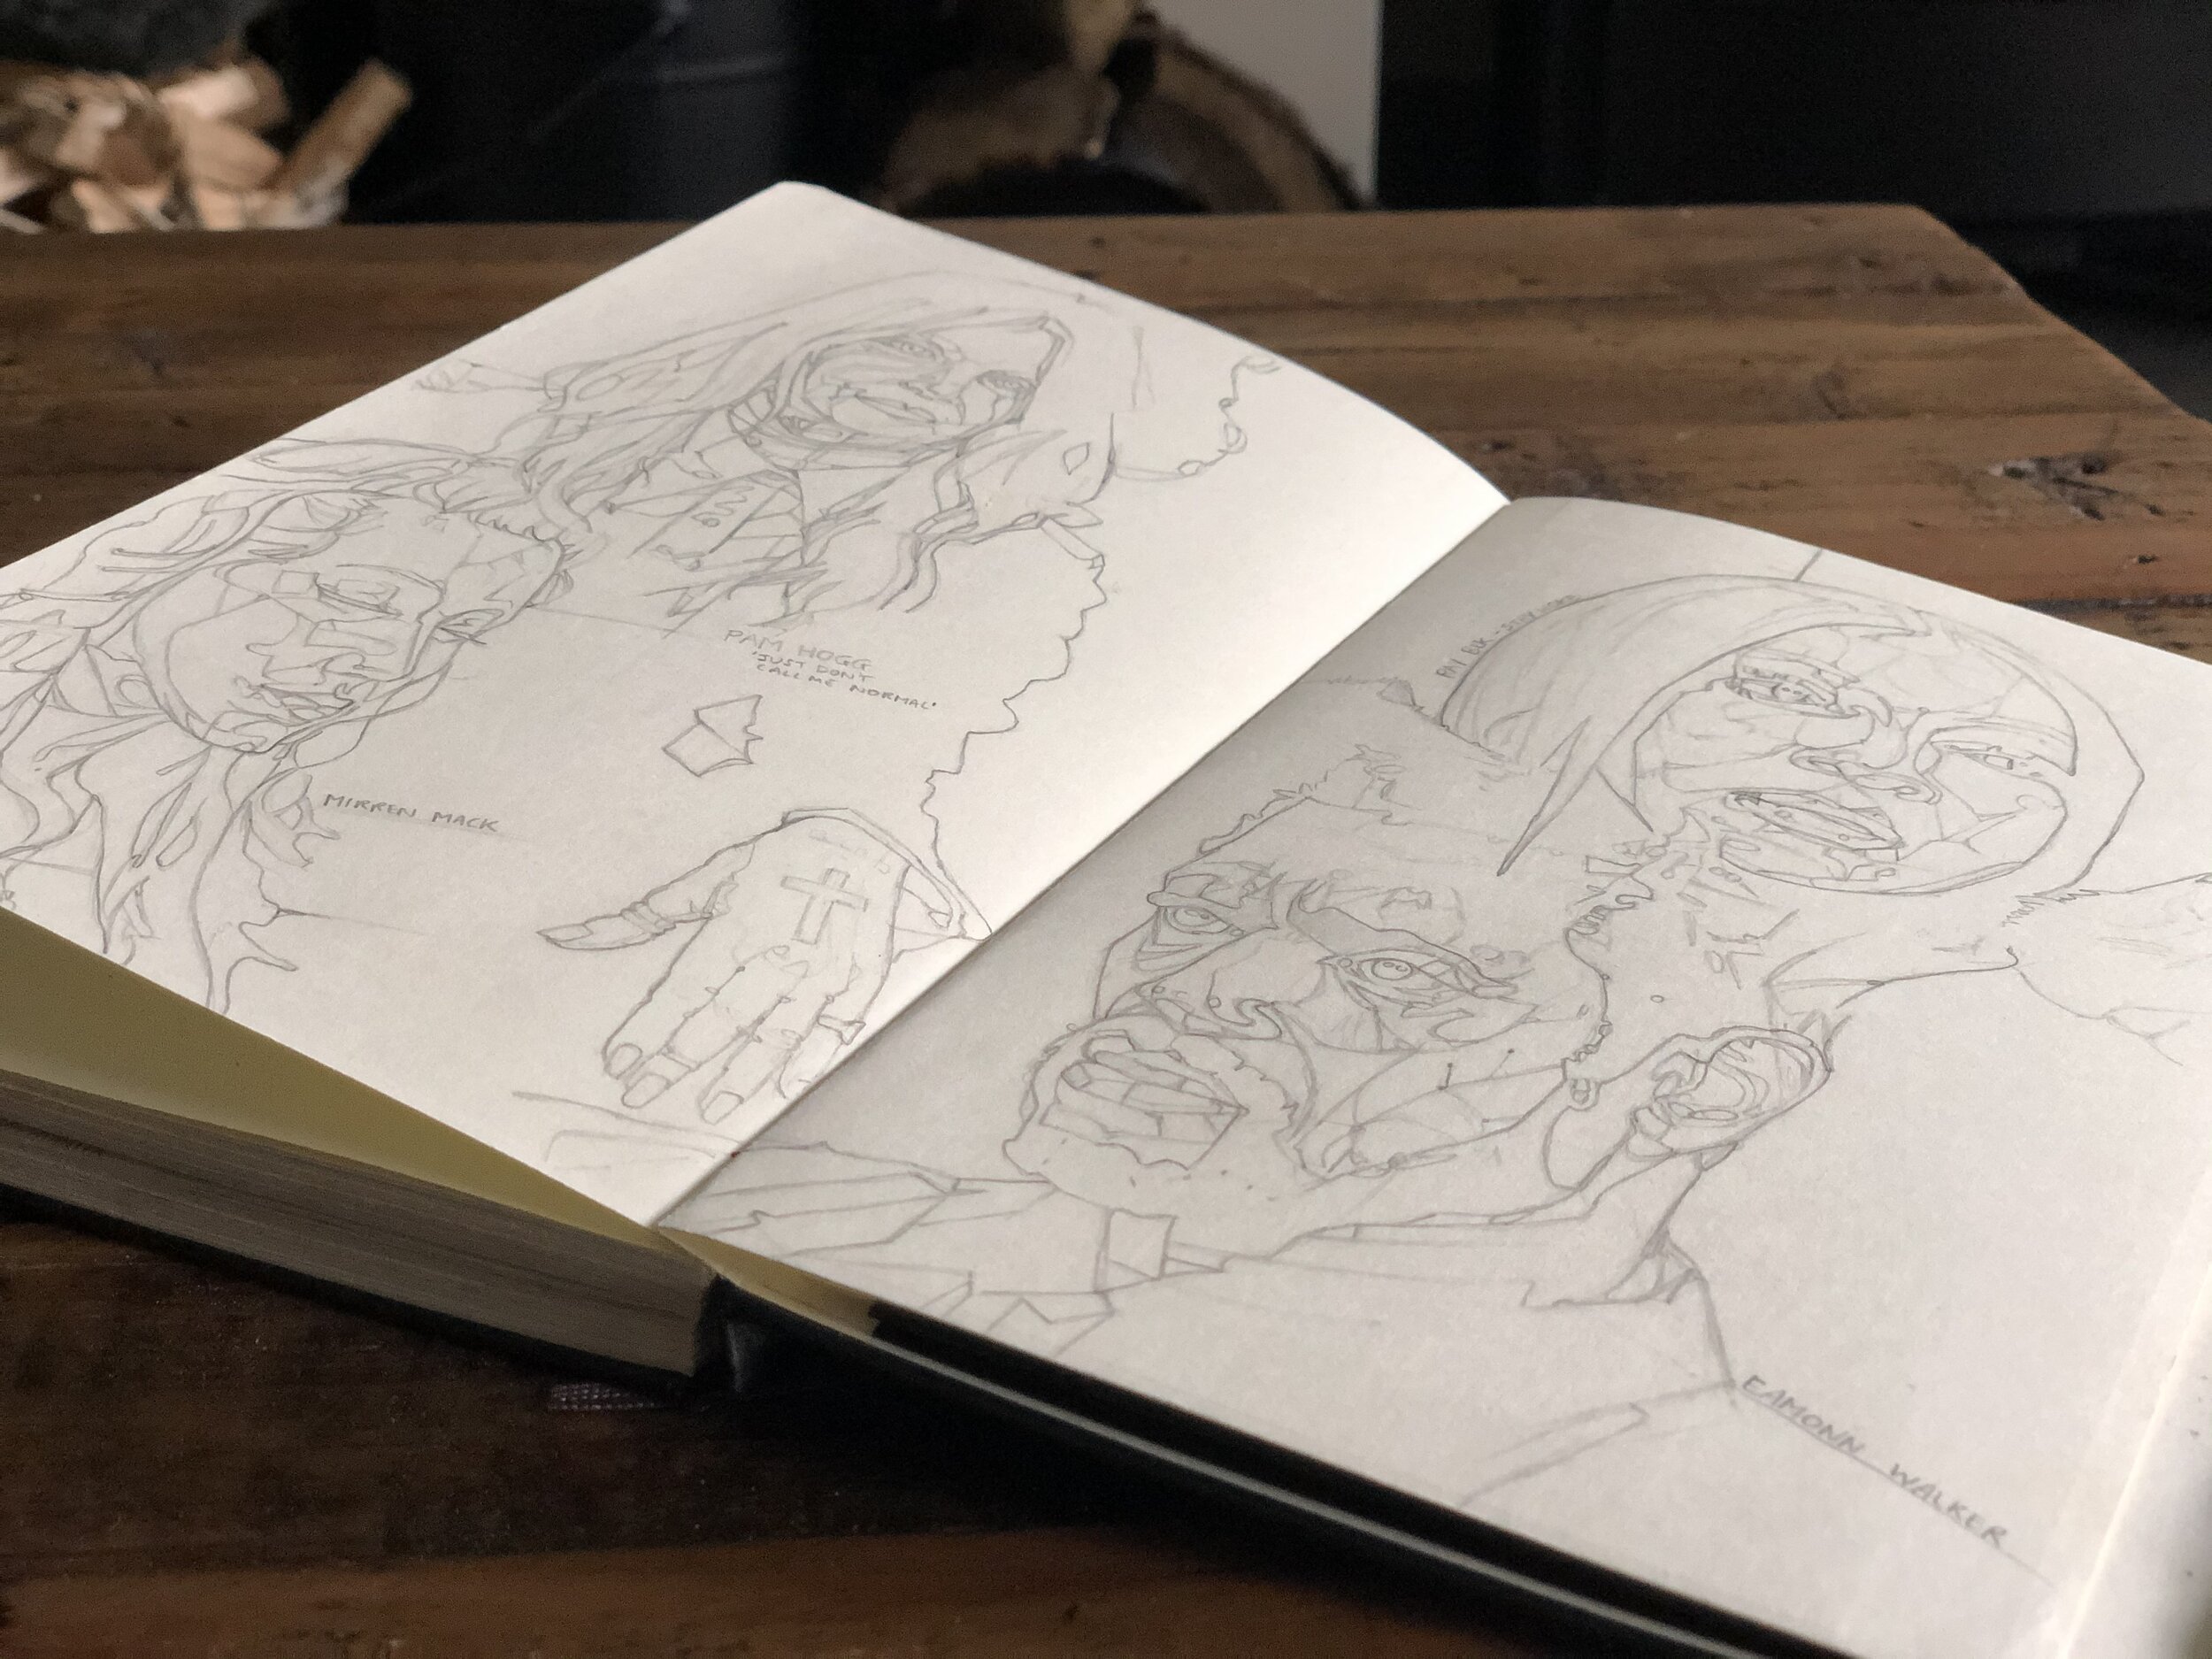 sinead-lawless-artist-sketchbook.jpg